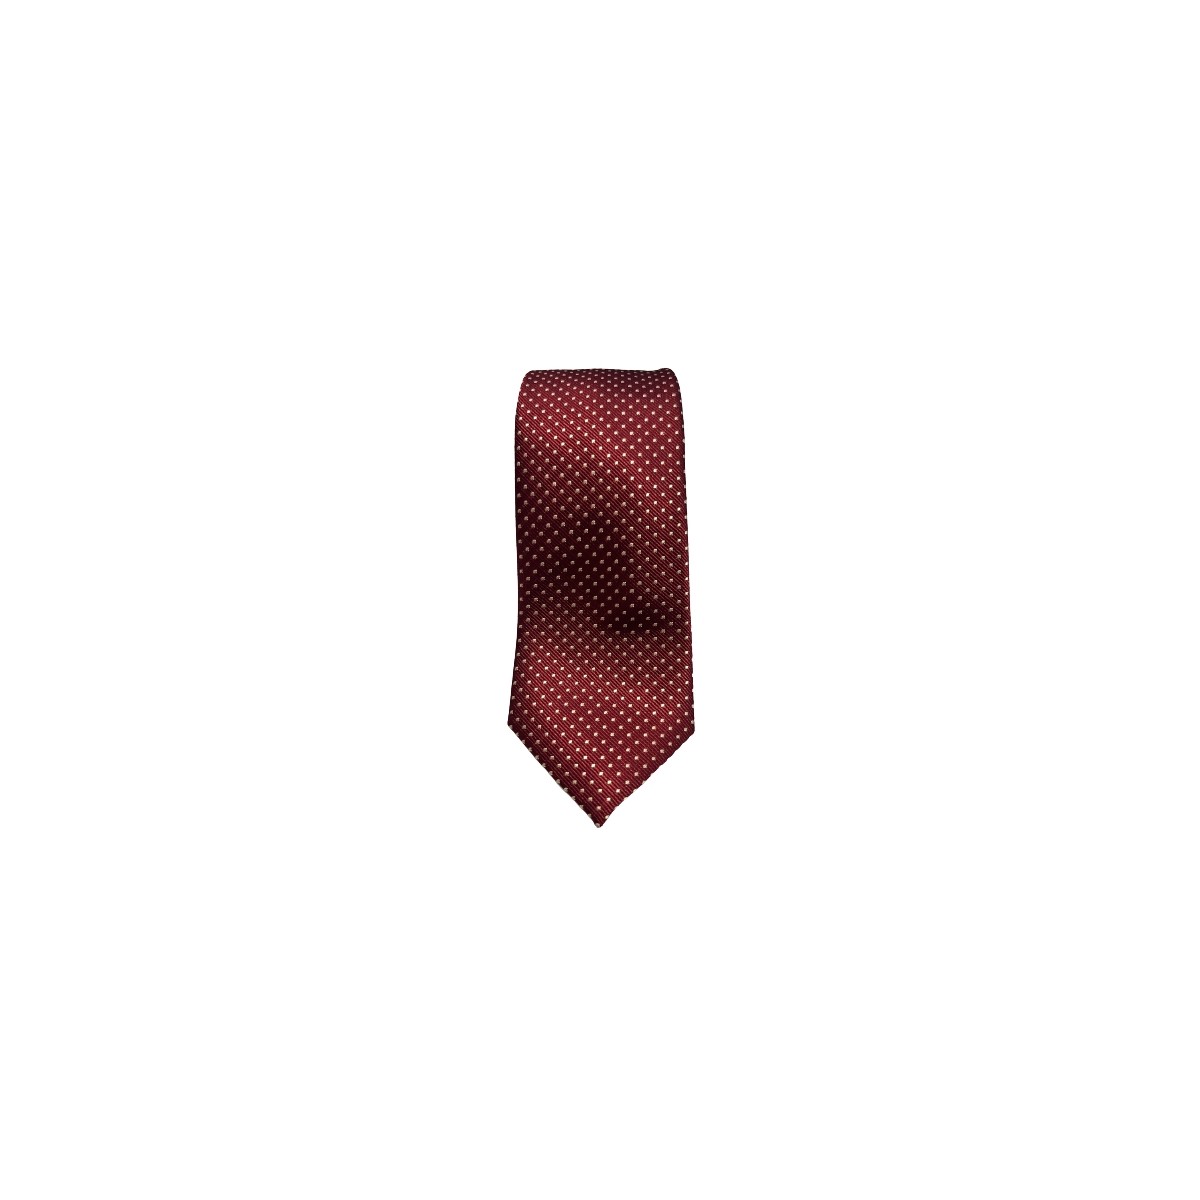 Cravate rouge à points blanc